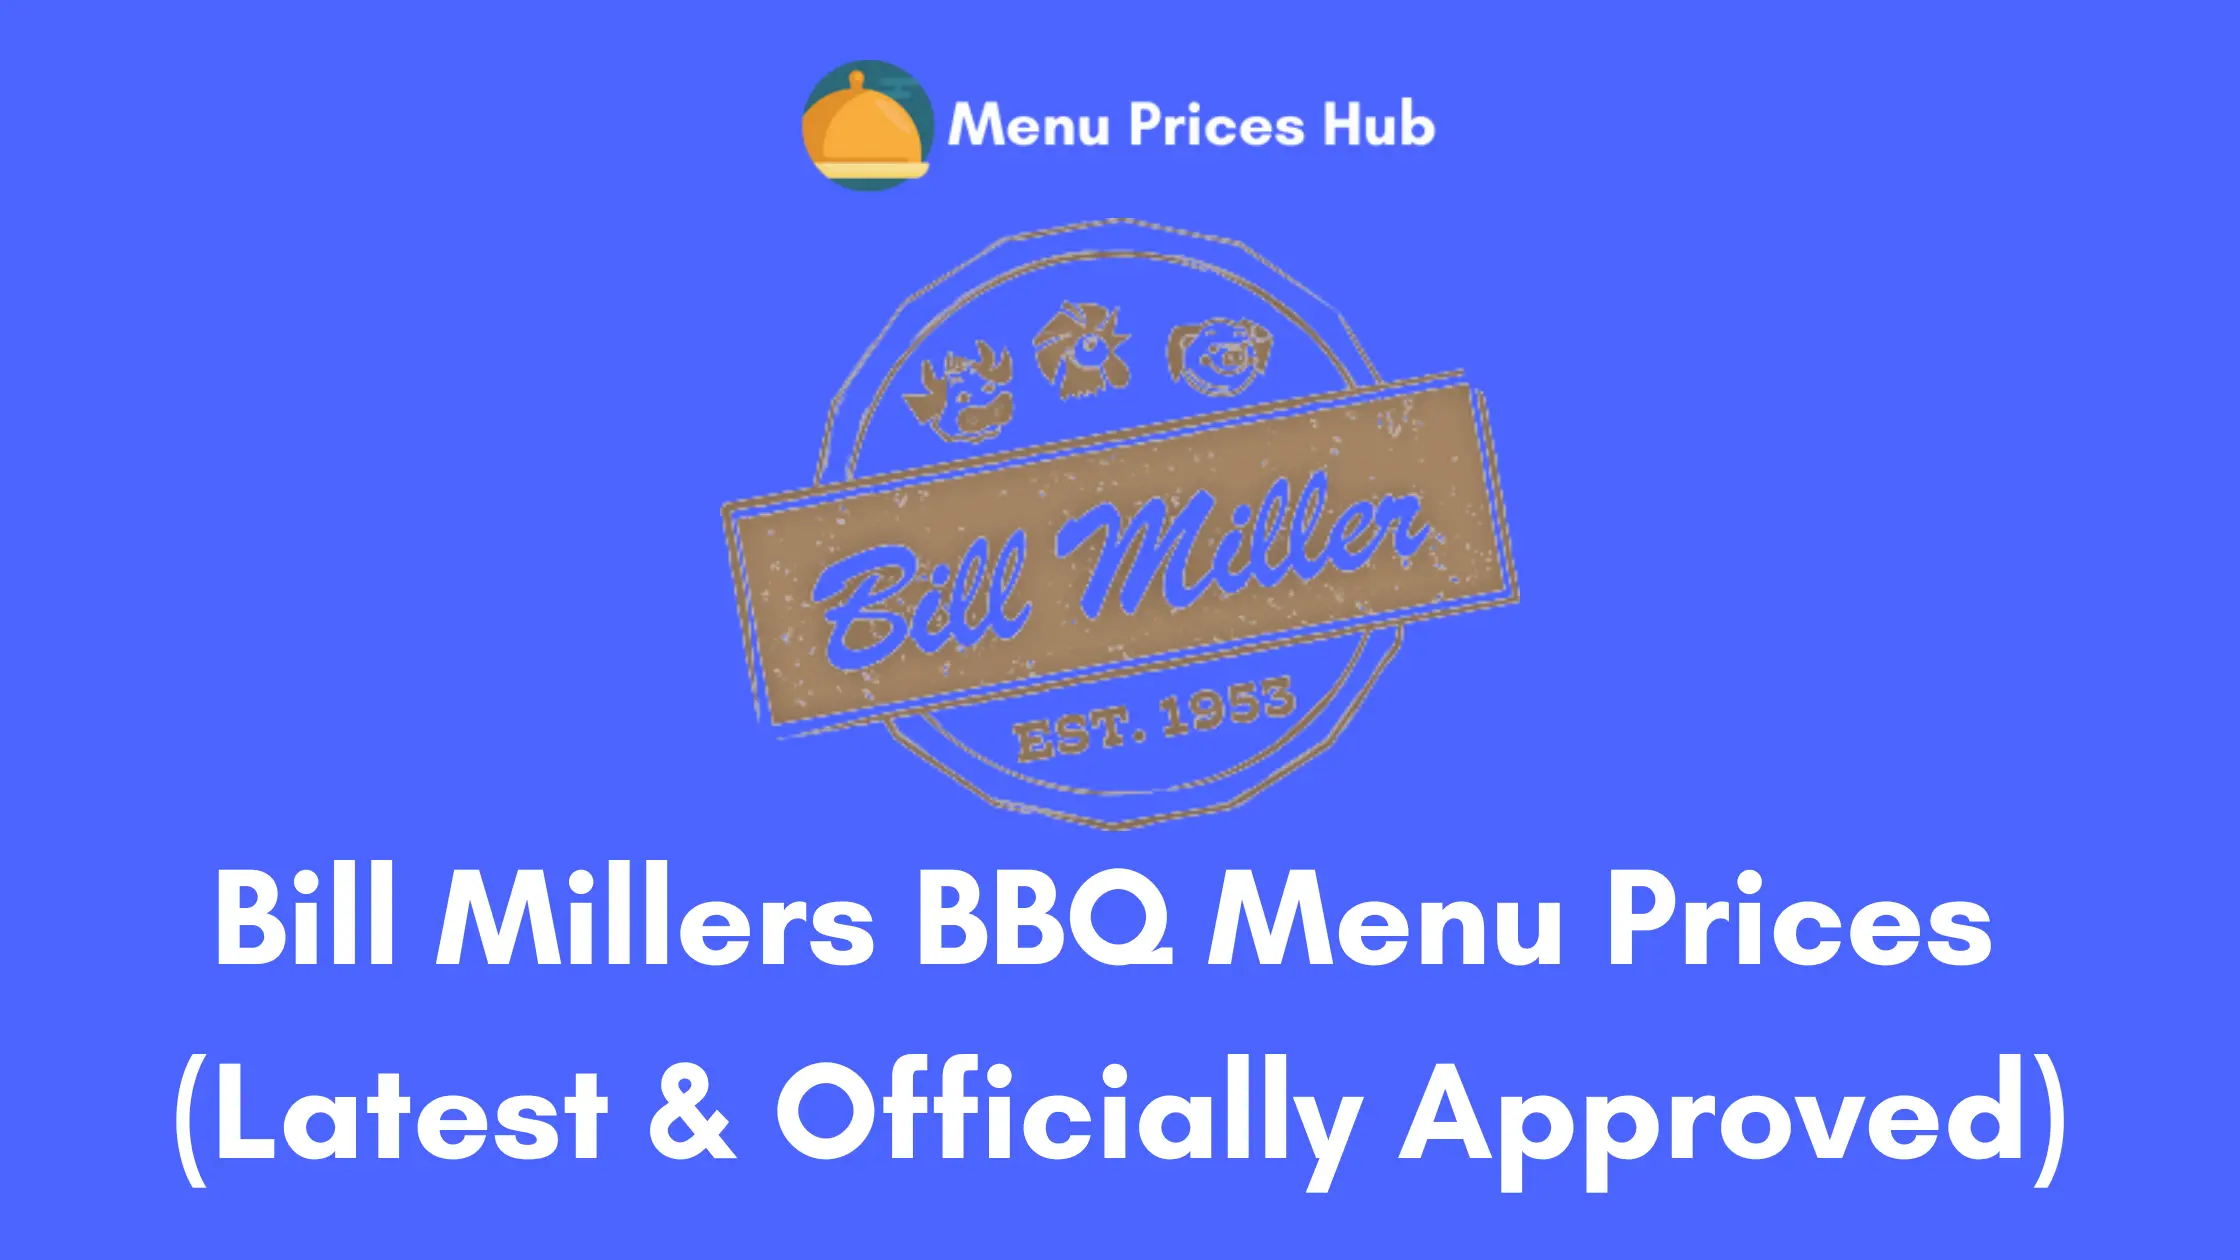 Bill Millers BBQ Menu Prices